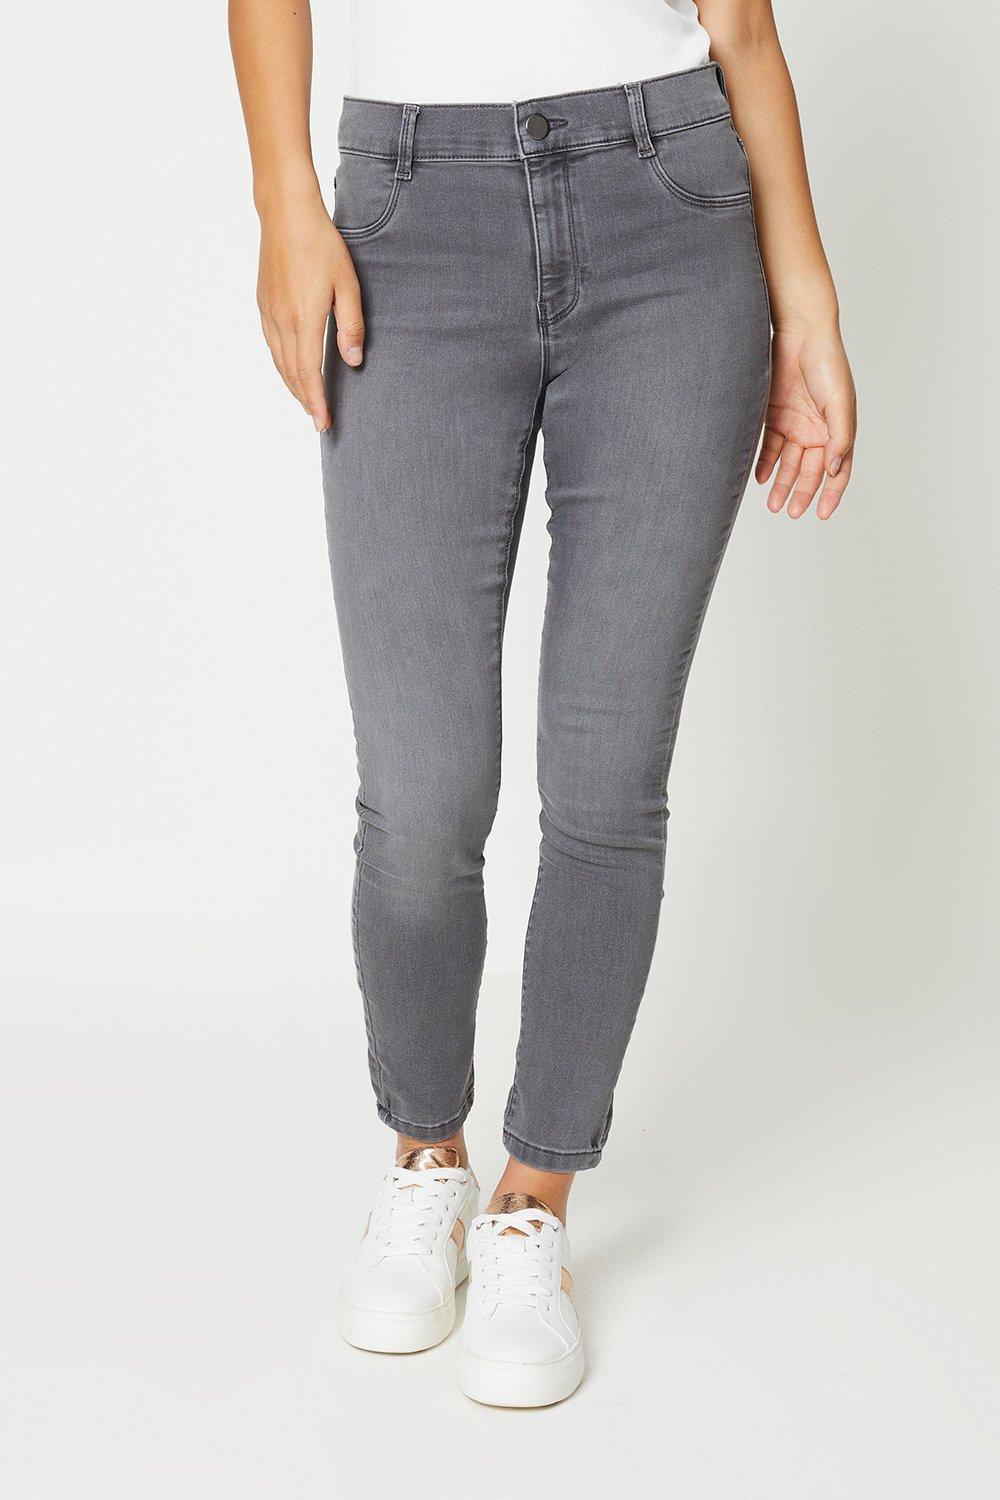 Women’s Petite Frankie Skinny Jeans - grey - 14